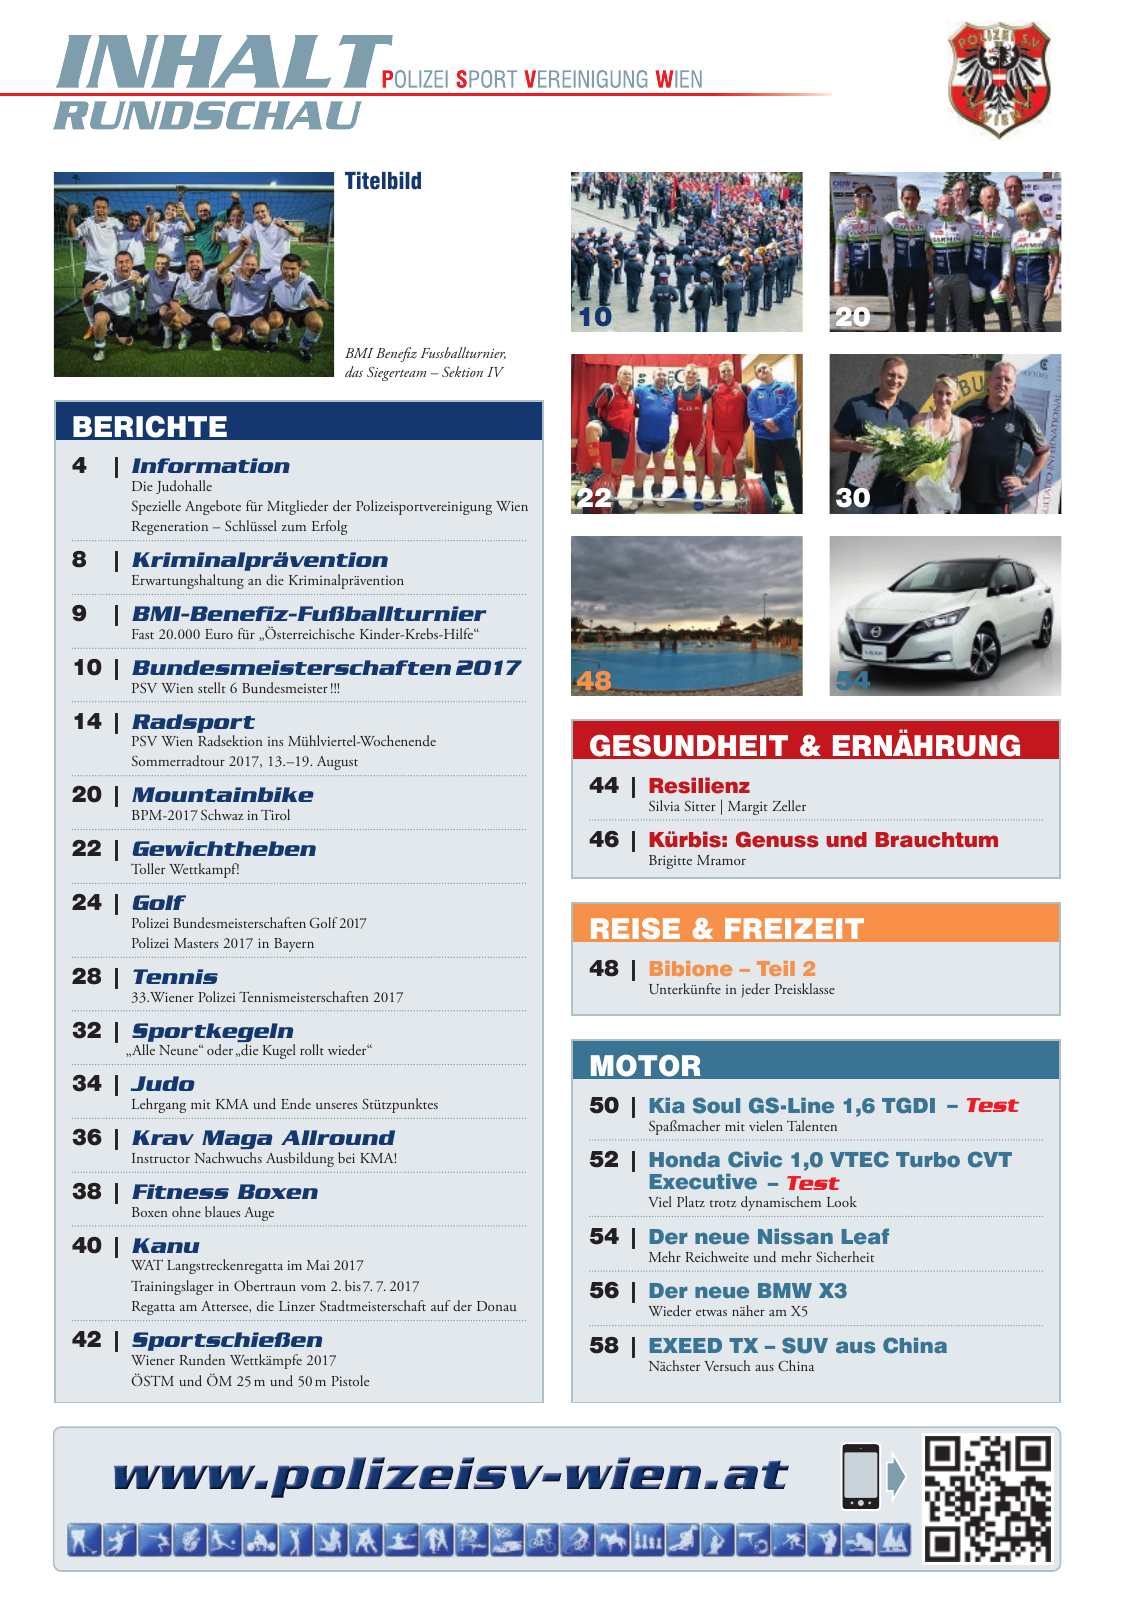 Vorschau Rundschau Polizei Sport 09-10/2017 Seite 3